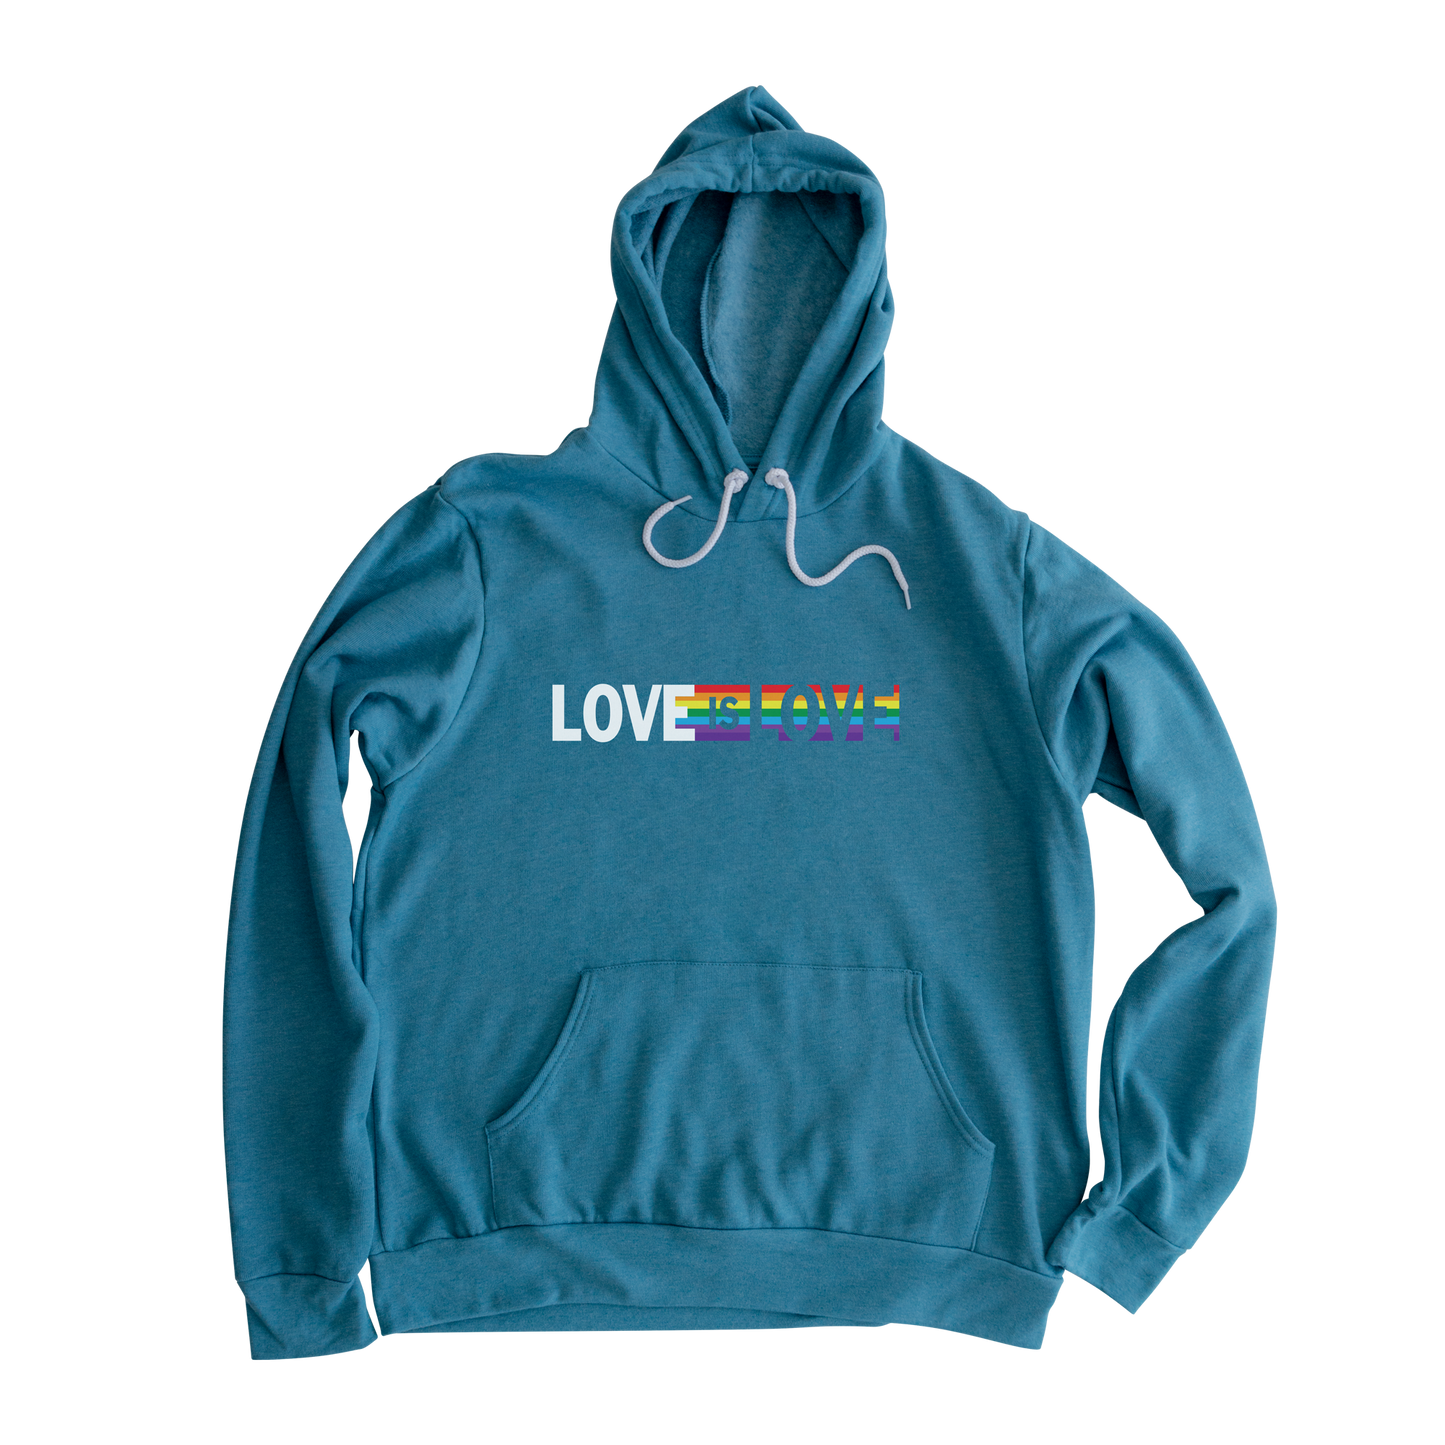 Love is Love Hooded Sweatshirt